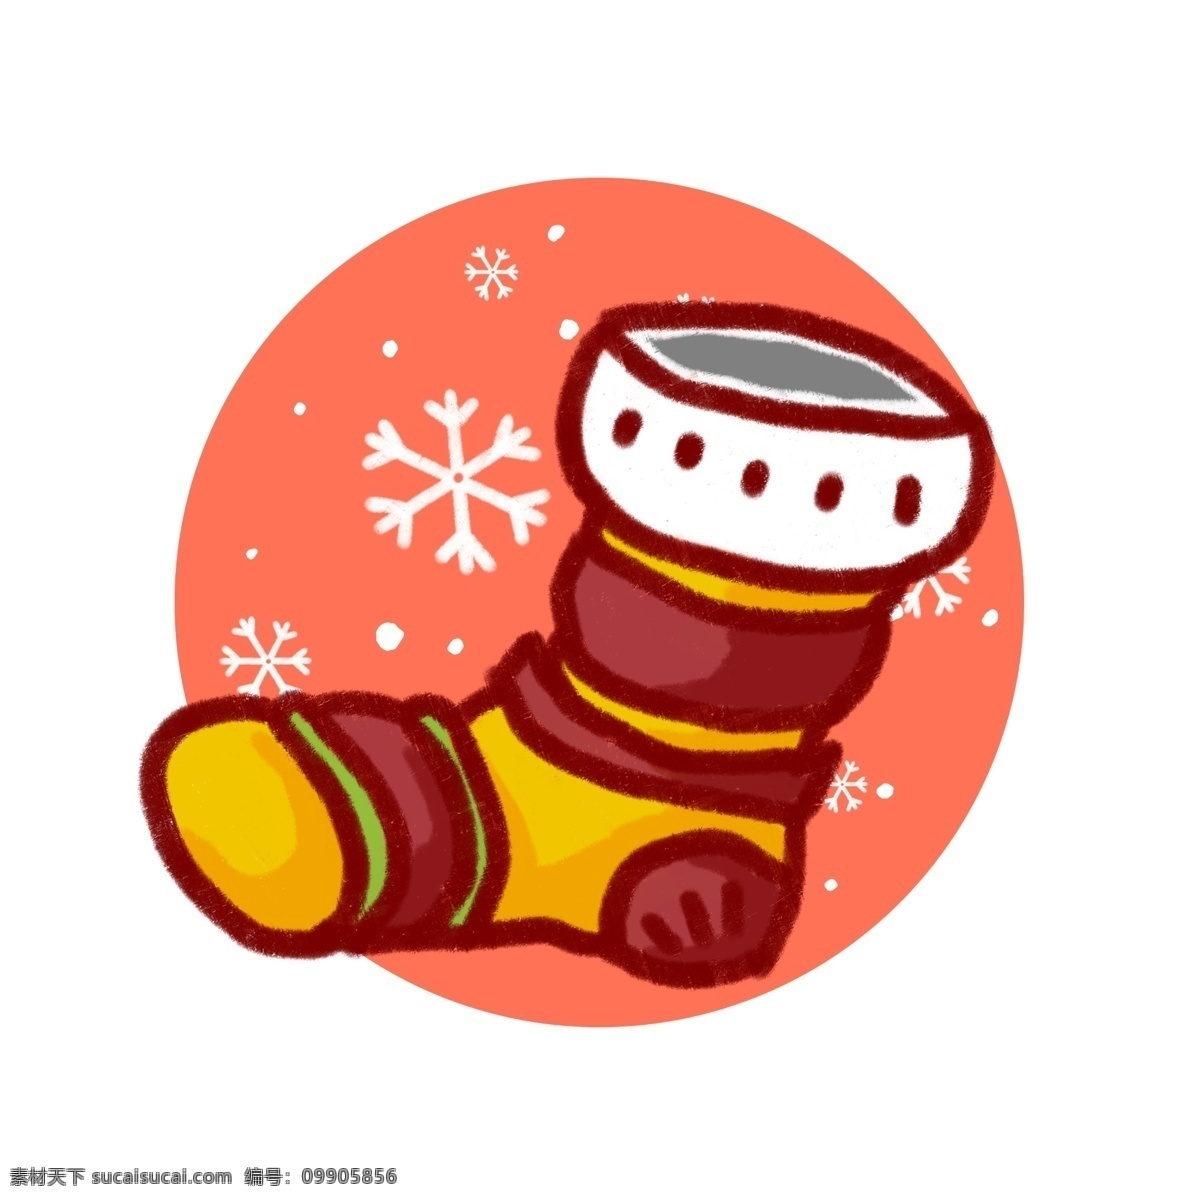 原创 手绘 风 插画 圣诞 节日 袜子 元素 圣诞节 雪花 板绘 圣诞袜 雪球